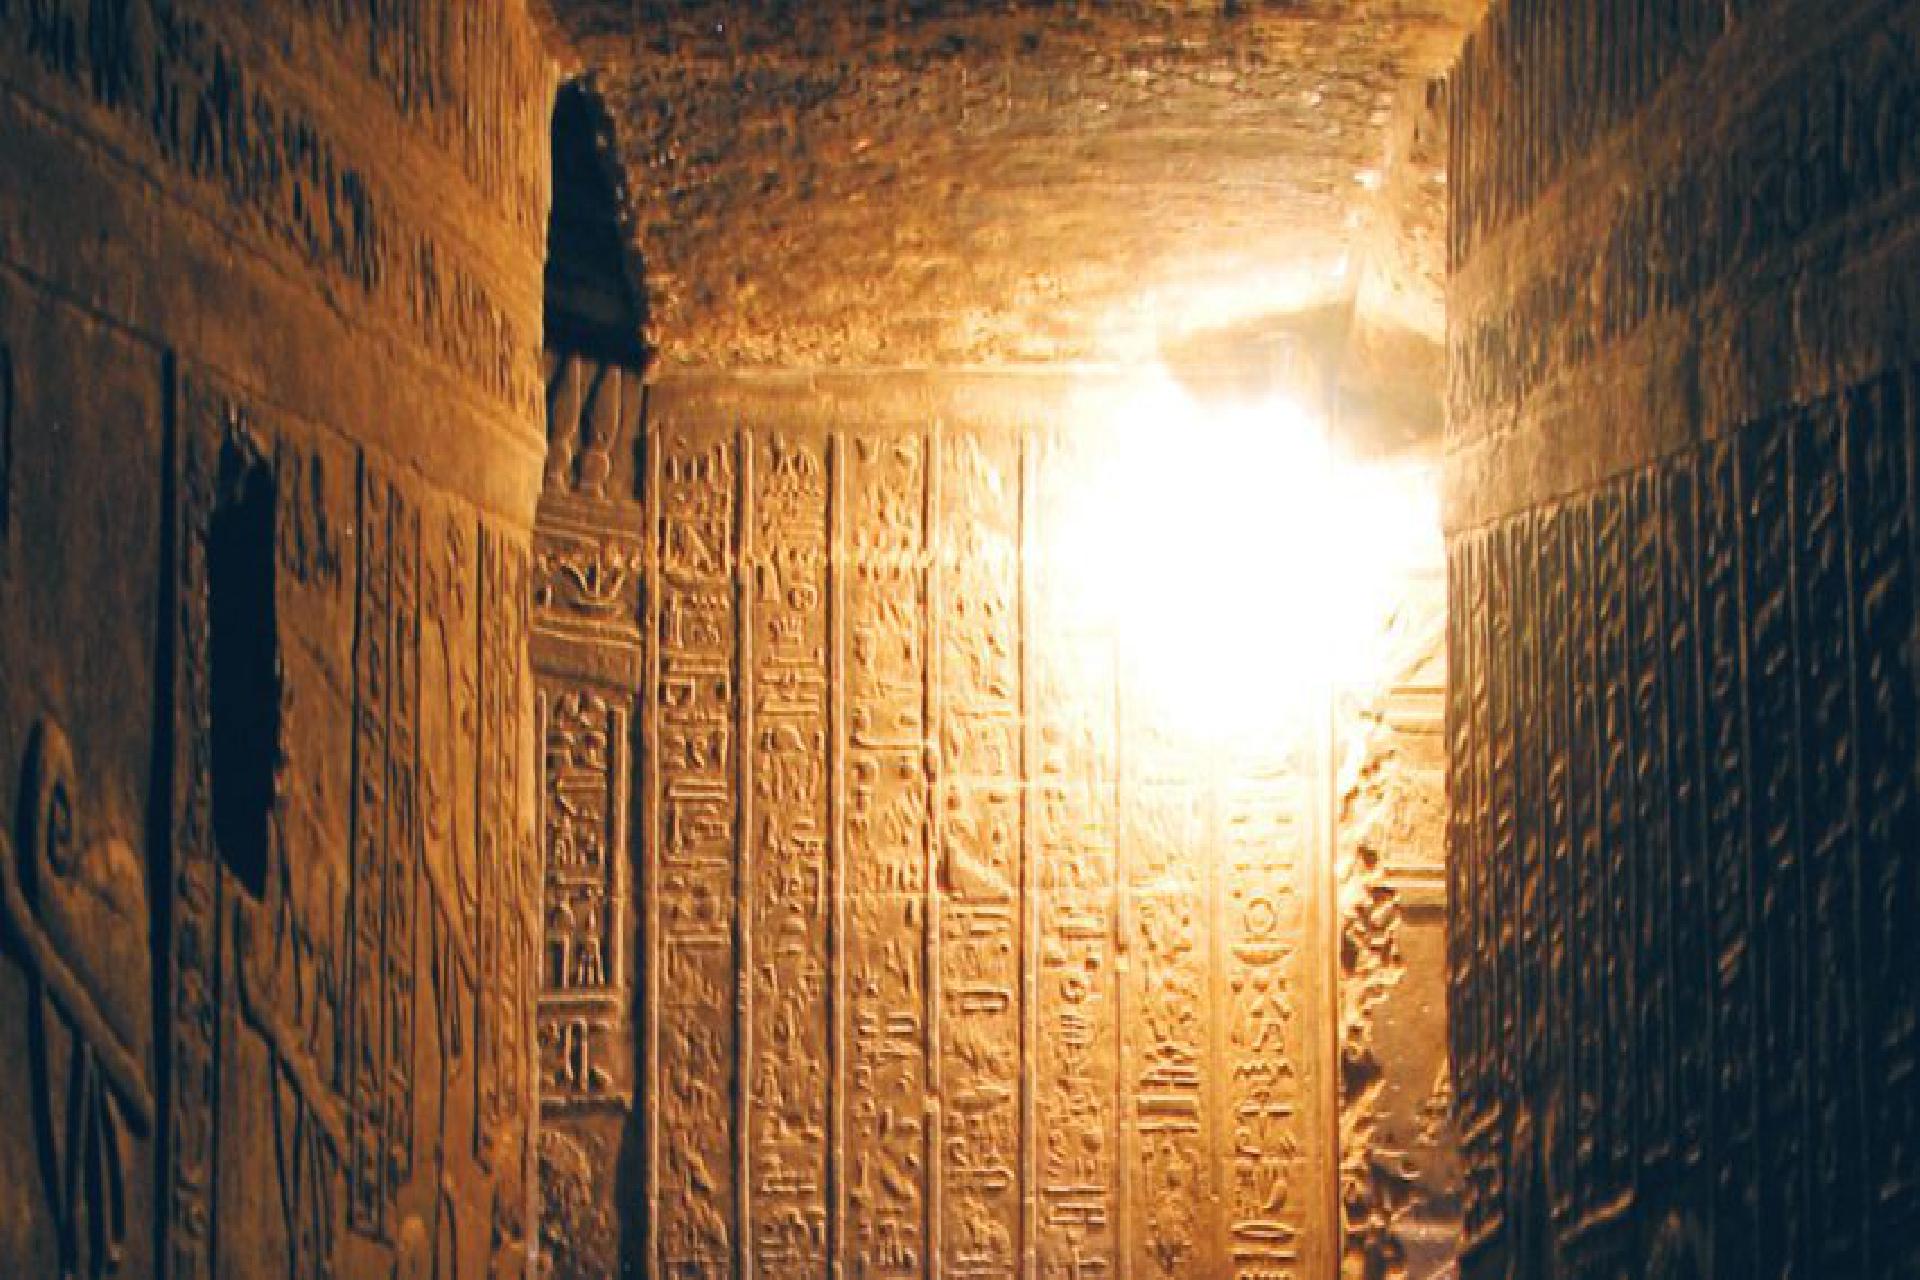 египет что внутри пирамид